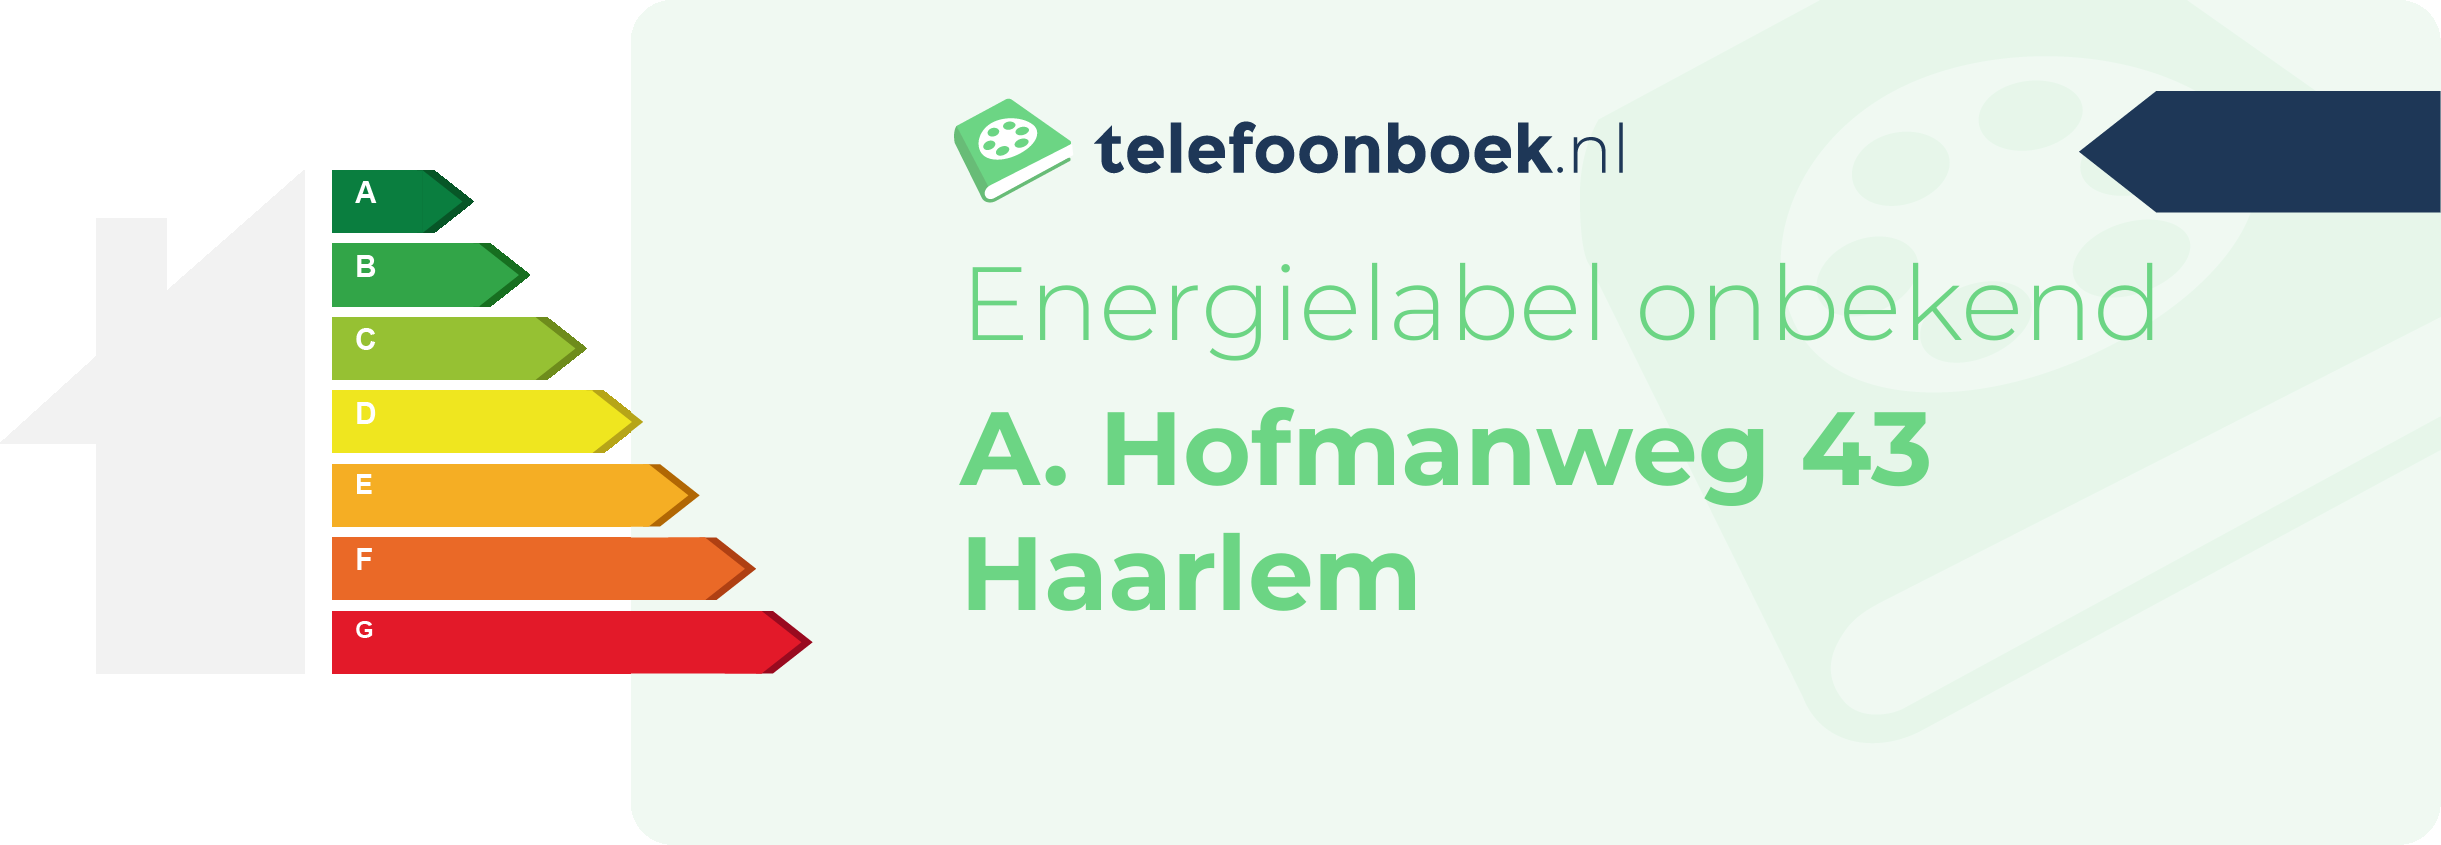 Energielabel A. Hofmanweg 43 Haarlem